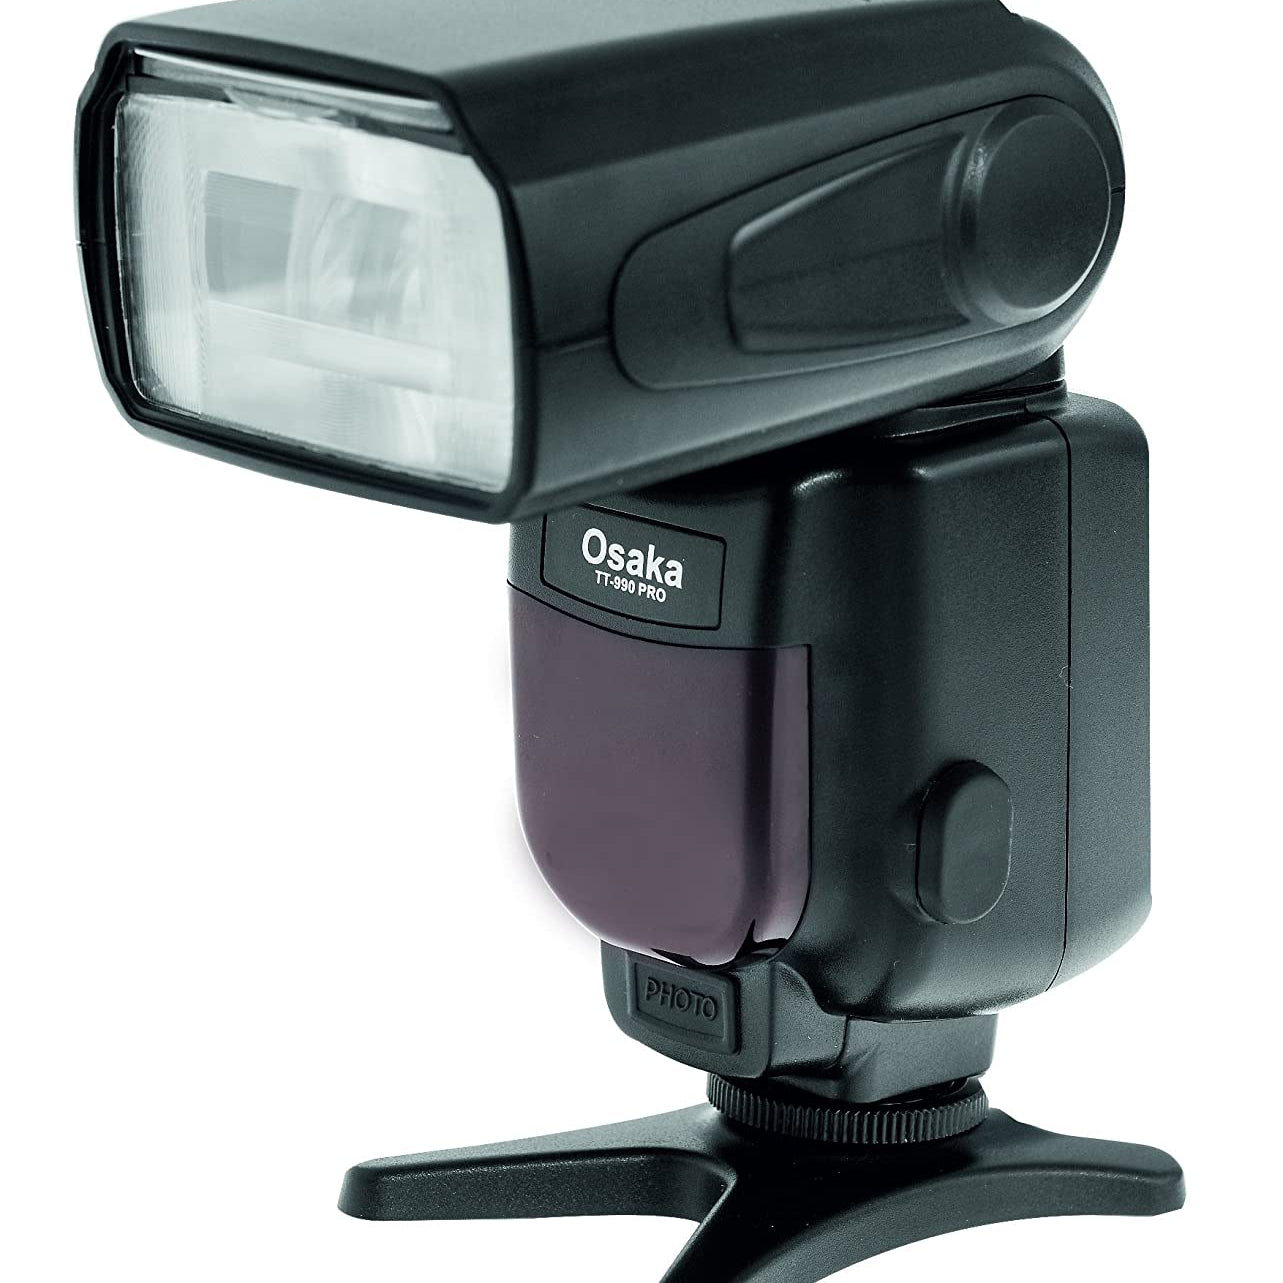 Osaka Camera Flash Speedlight TT-990 with Trigger RM16 - The Camerashop